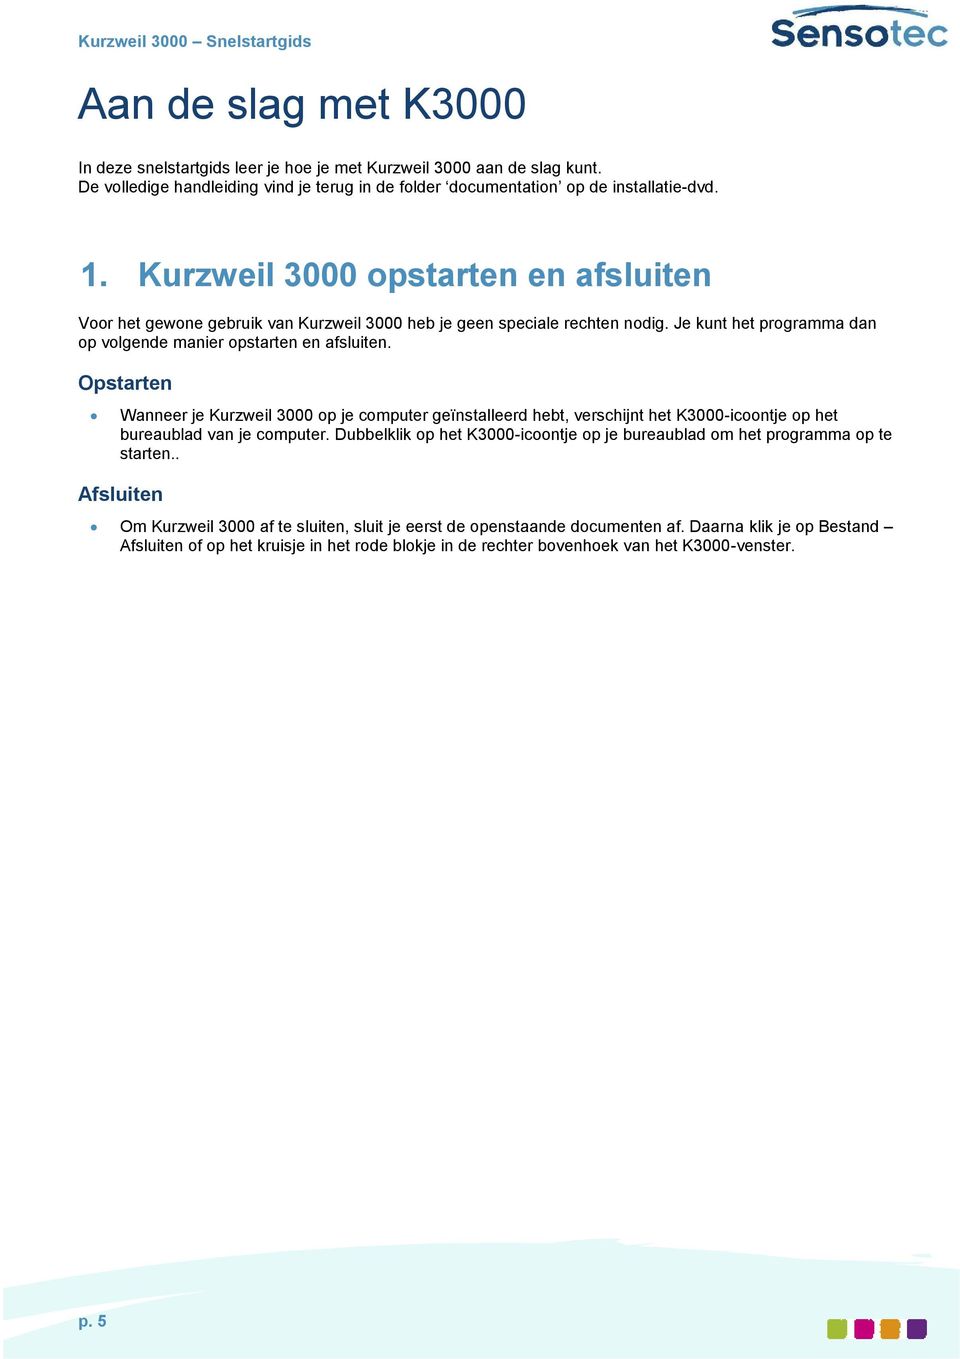 Opstarten Wanneer je Kurzweil 3000 op je computer geïnstalleerd hebt, verschijnt het K3000-icoontje op het bureaublad van je computer.